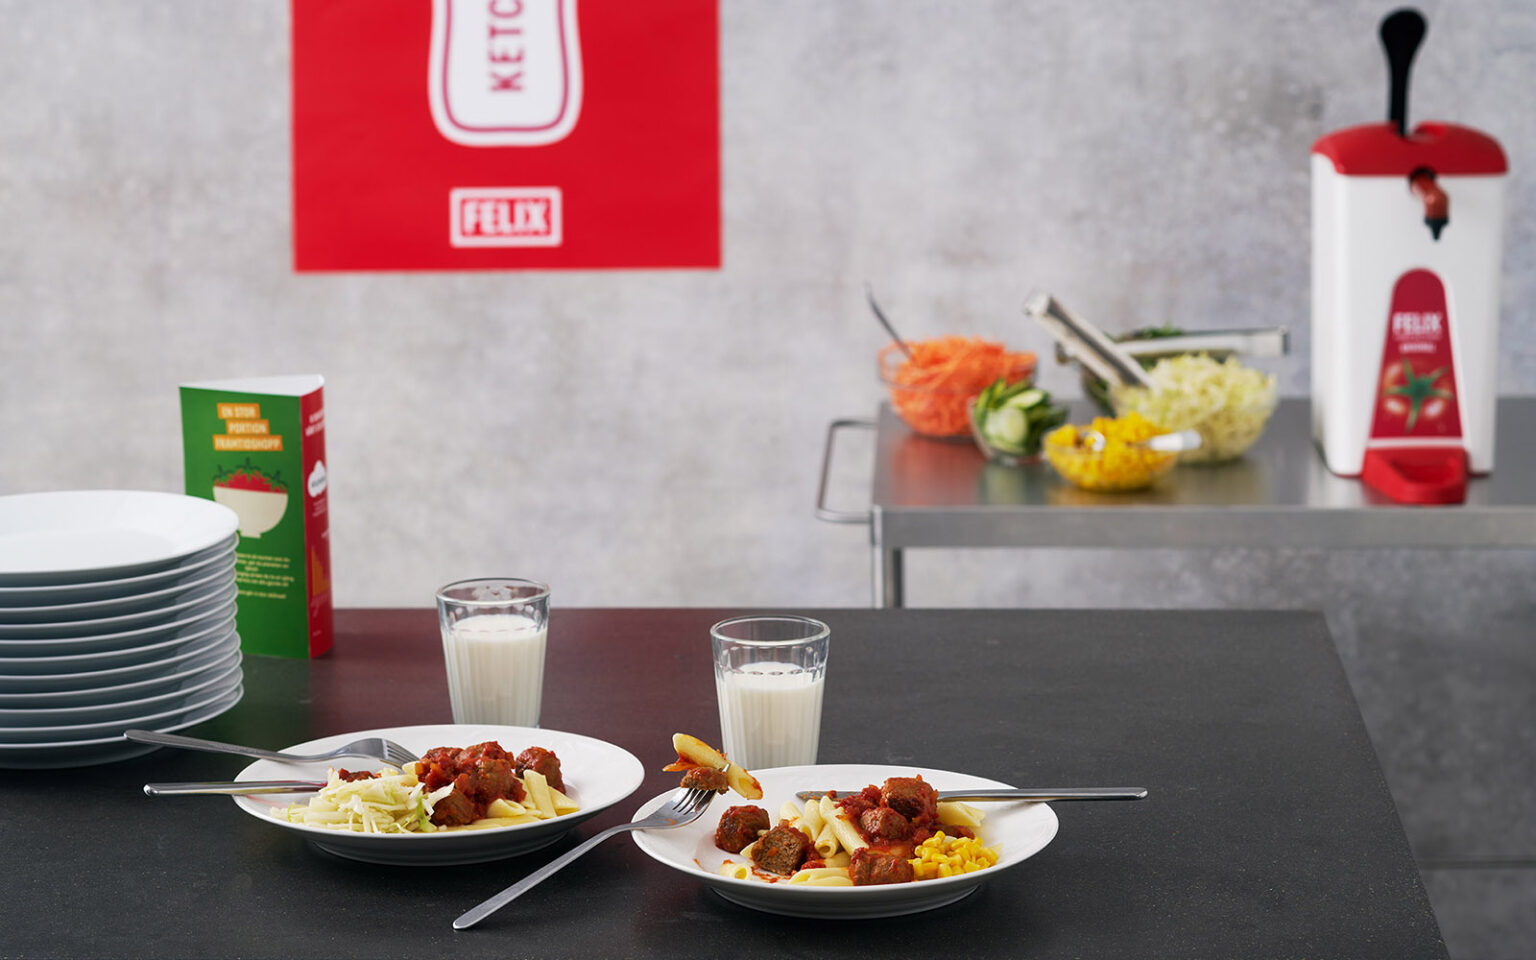 Två tallrikar med FELIX Nötköttbulle med ärta med pasta och FELIX Tomatketchup. I bakgrunden syns staplar med tallrikar, en serveringsvagn med sallad, en Sentomat med FELIX Tomatketchup och en affisch från FELIX.